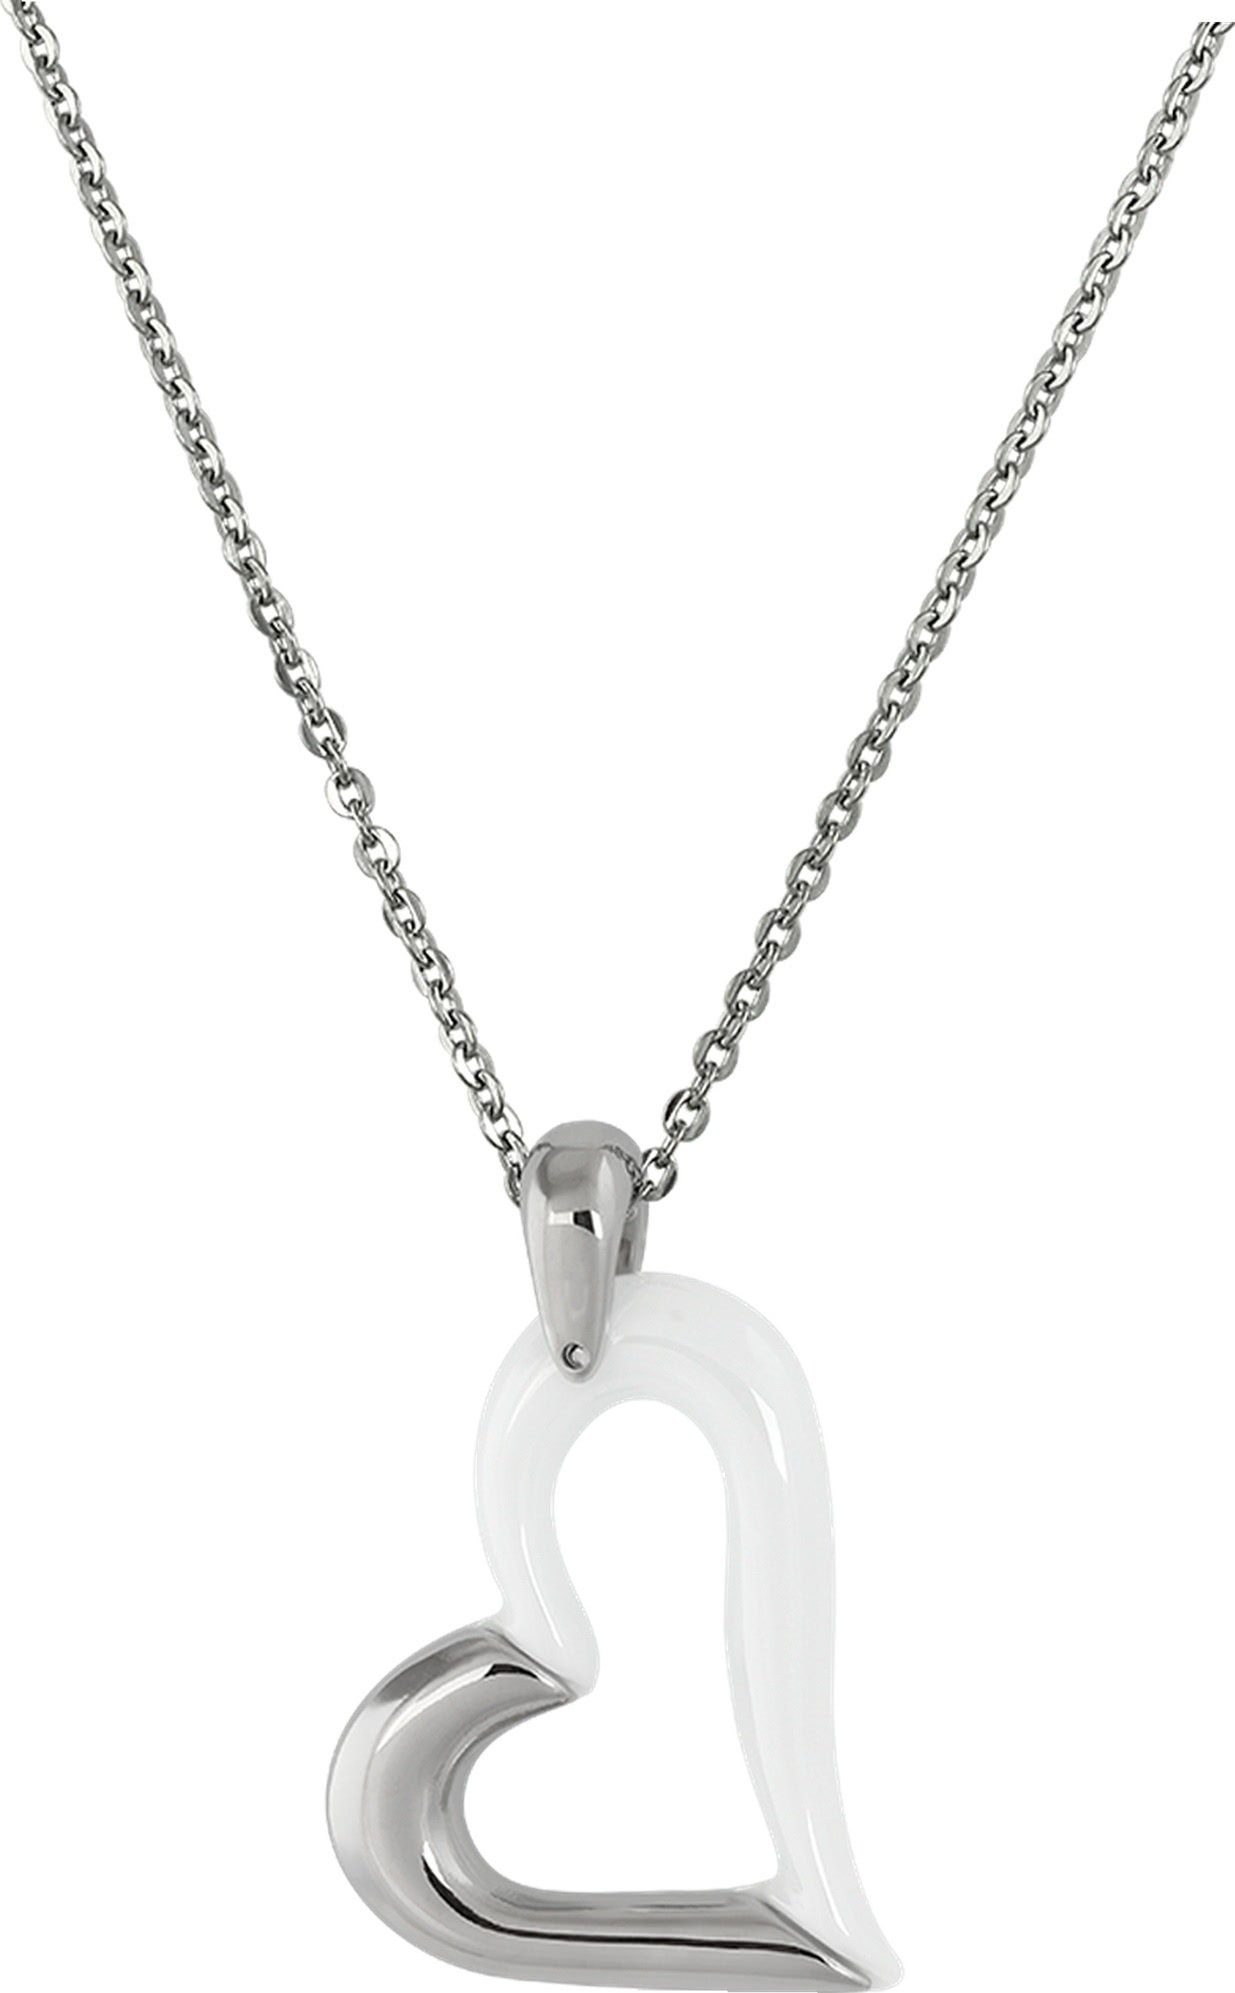 Steel) weiß Halsketten Damen Herz Edelstahlkette silber (Halskette), Edelstahl Halskette (Herz) (Stainless Amello aus Amello